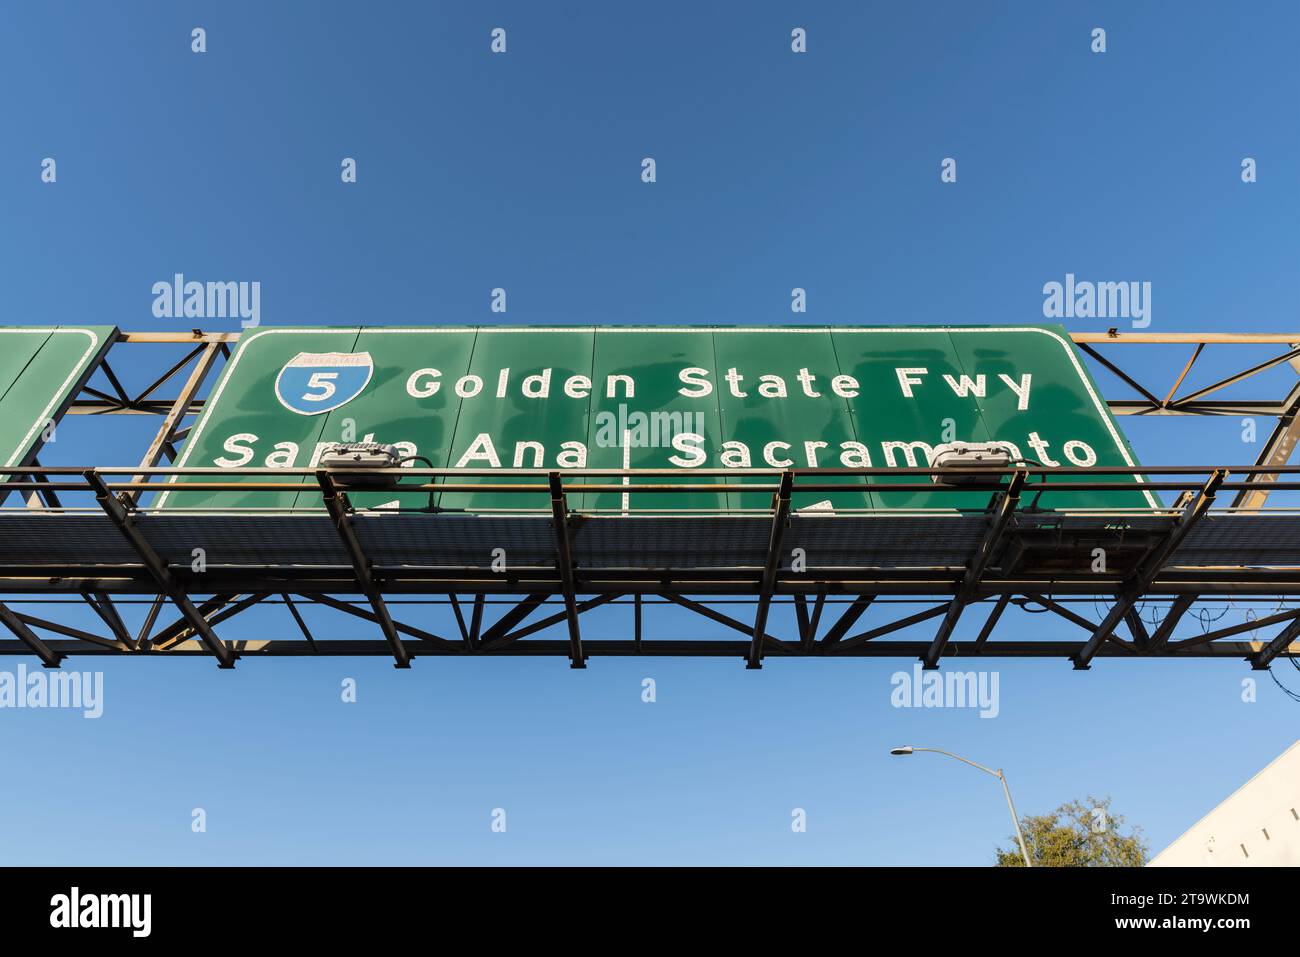 Segui l'Interstate 5 della Golden State Freeway per Santa Ana o Sacramento California. Foto Stock